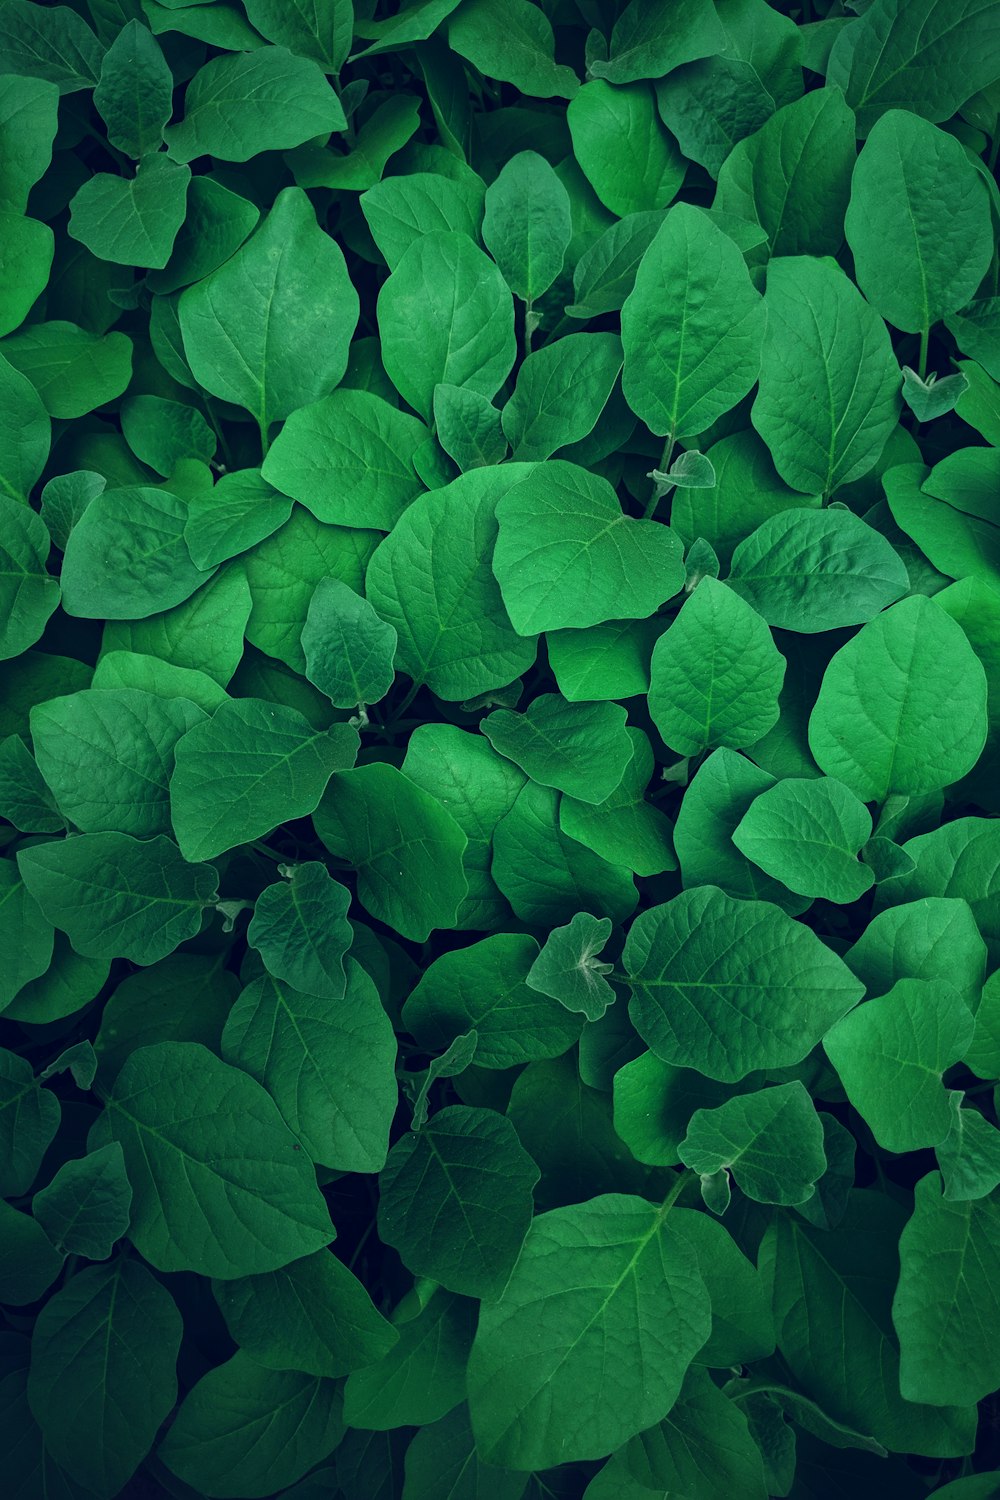 Fotografie von grünen Blättern